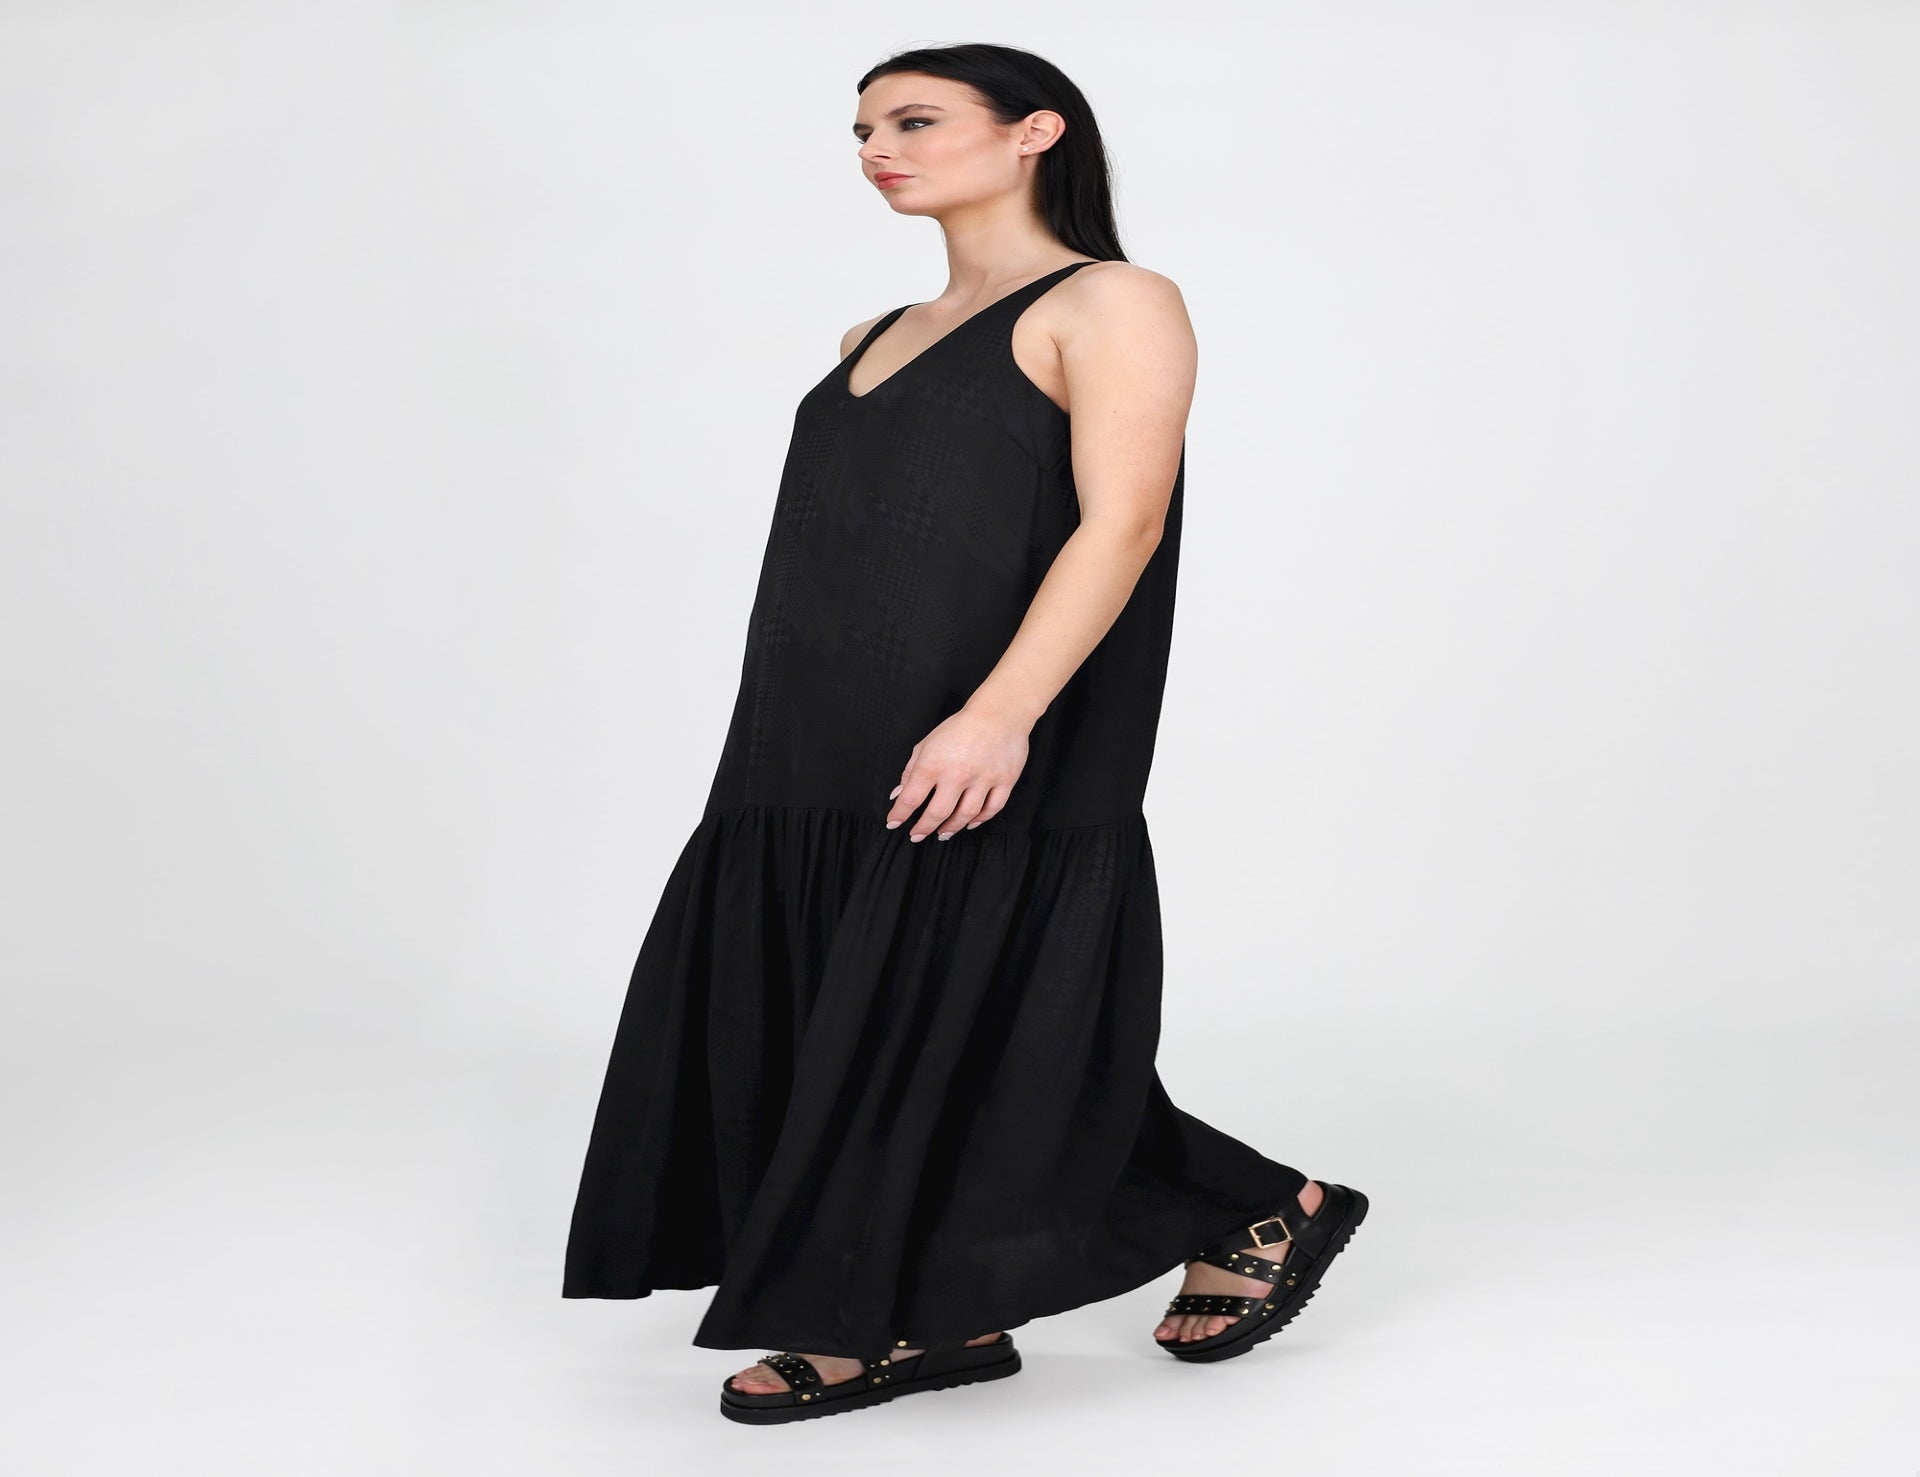 Jacquard V-Neck Maxi Dress - Black - Dress - Maxi - Women's Clothing ...